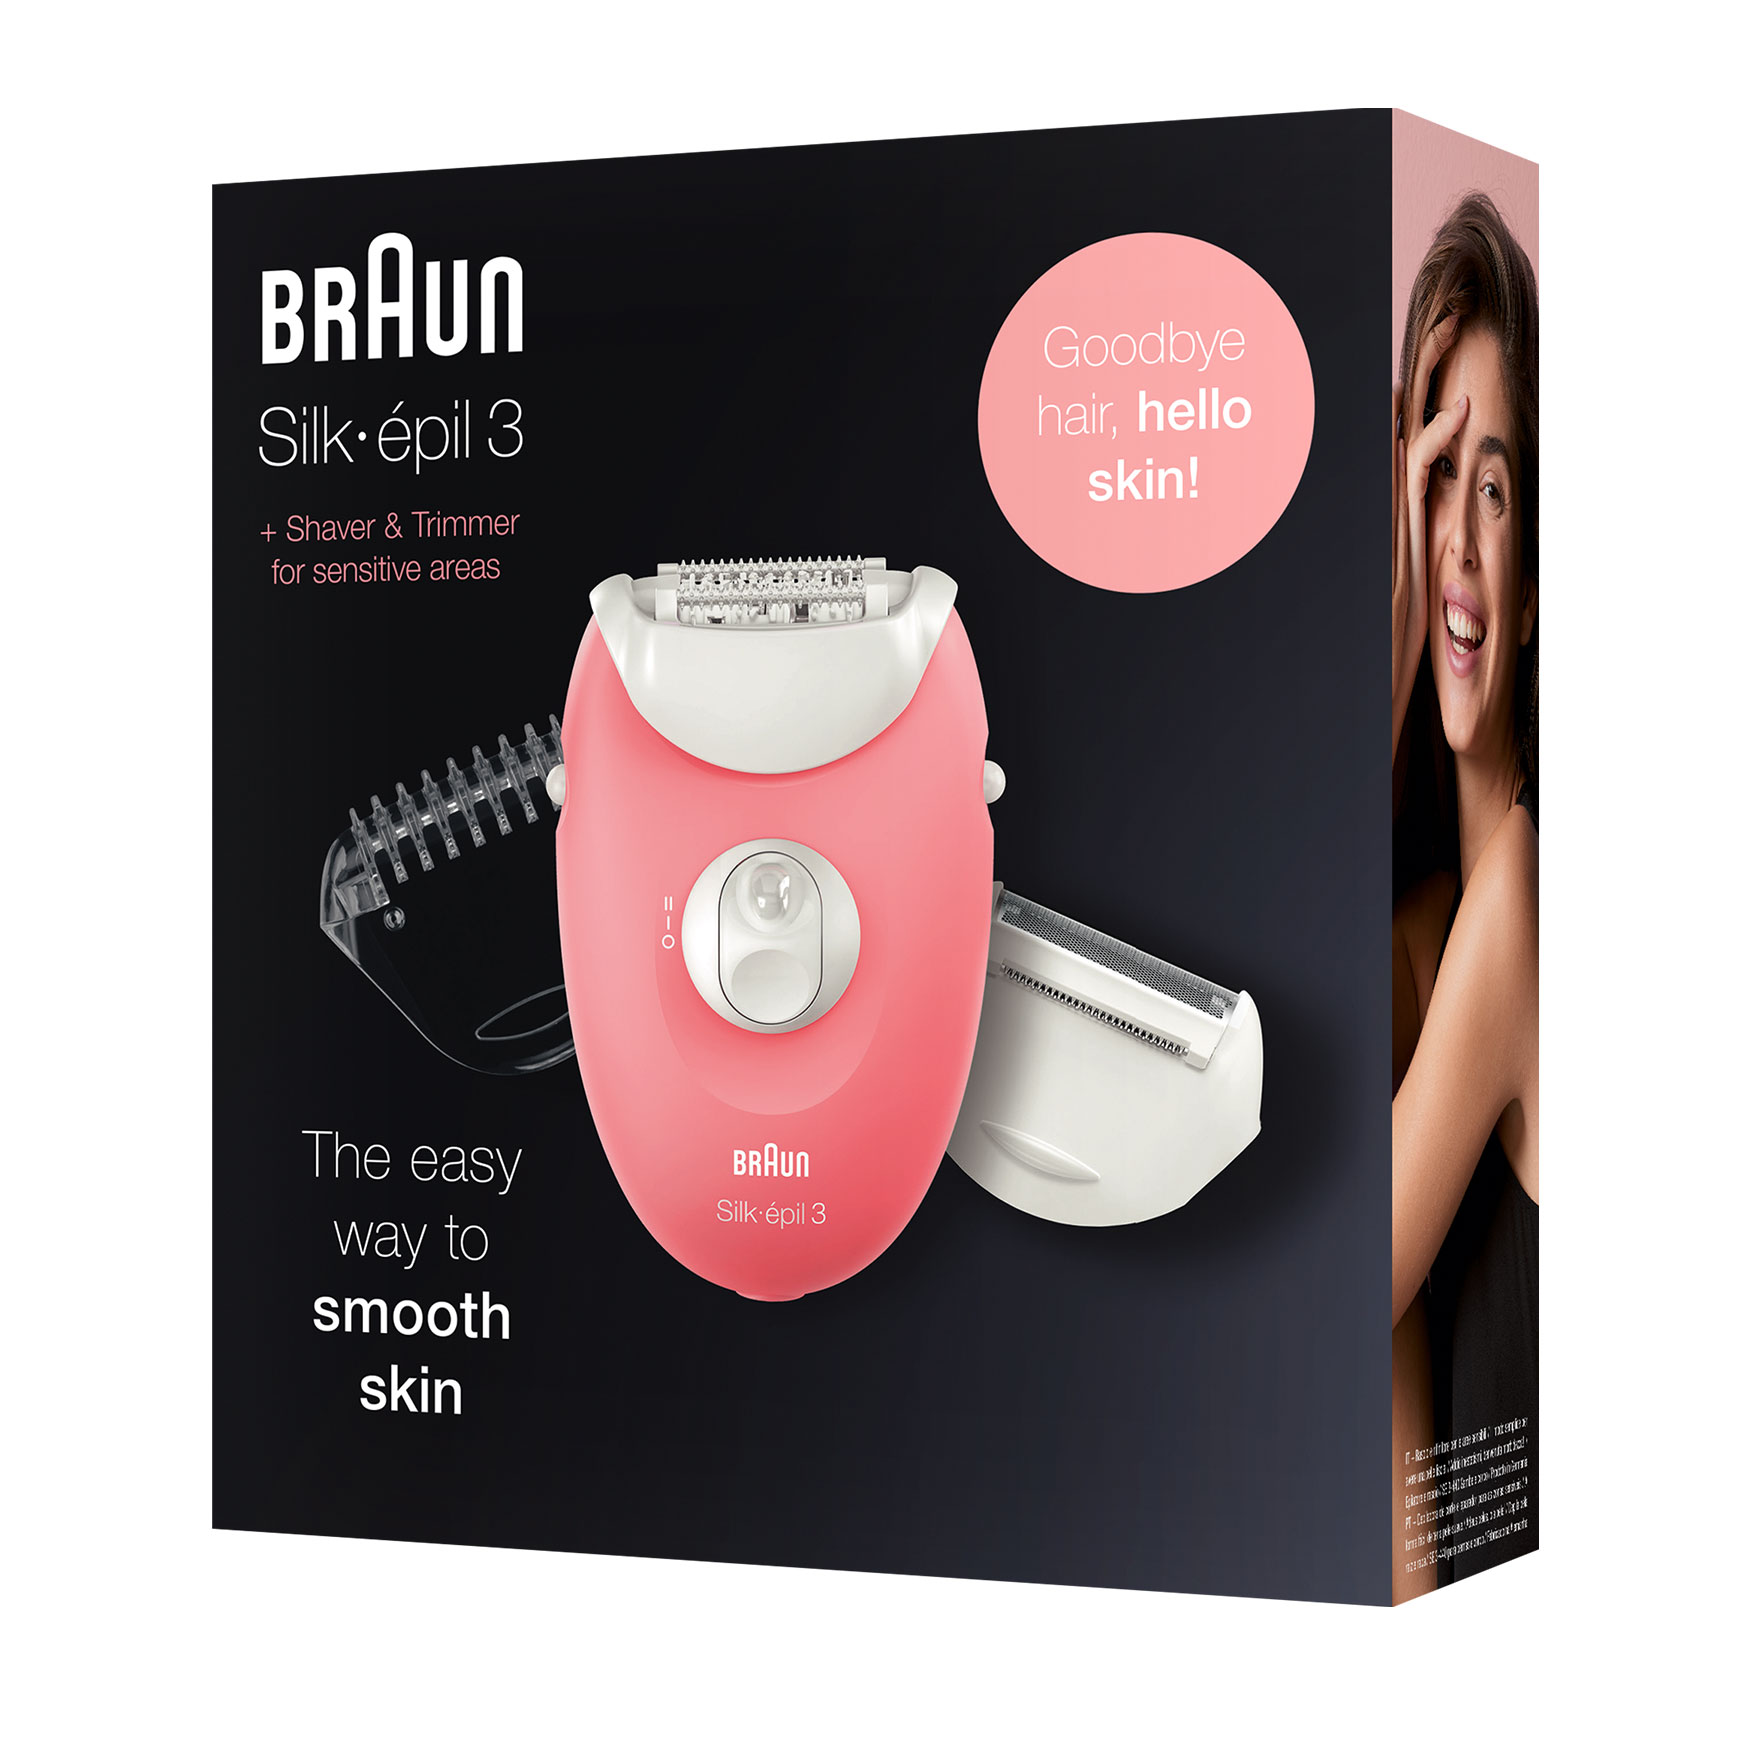 Braun SILK-ÉPIL 3 LEGS 3170 - Hair removal tool - weiss/white